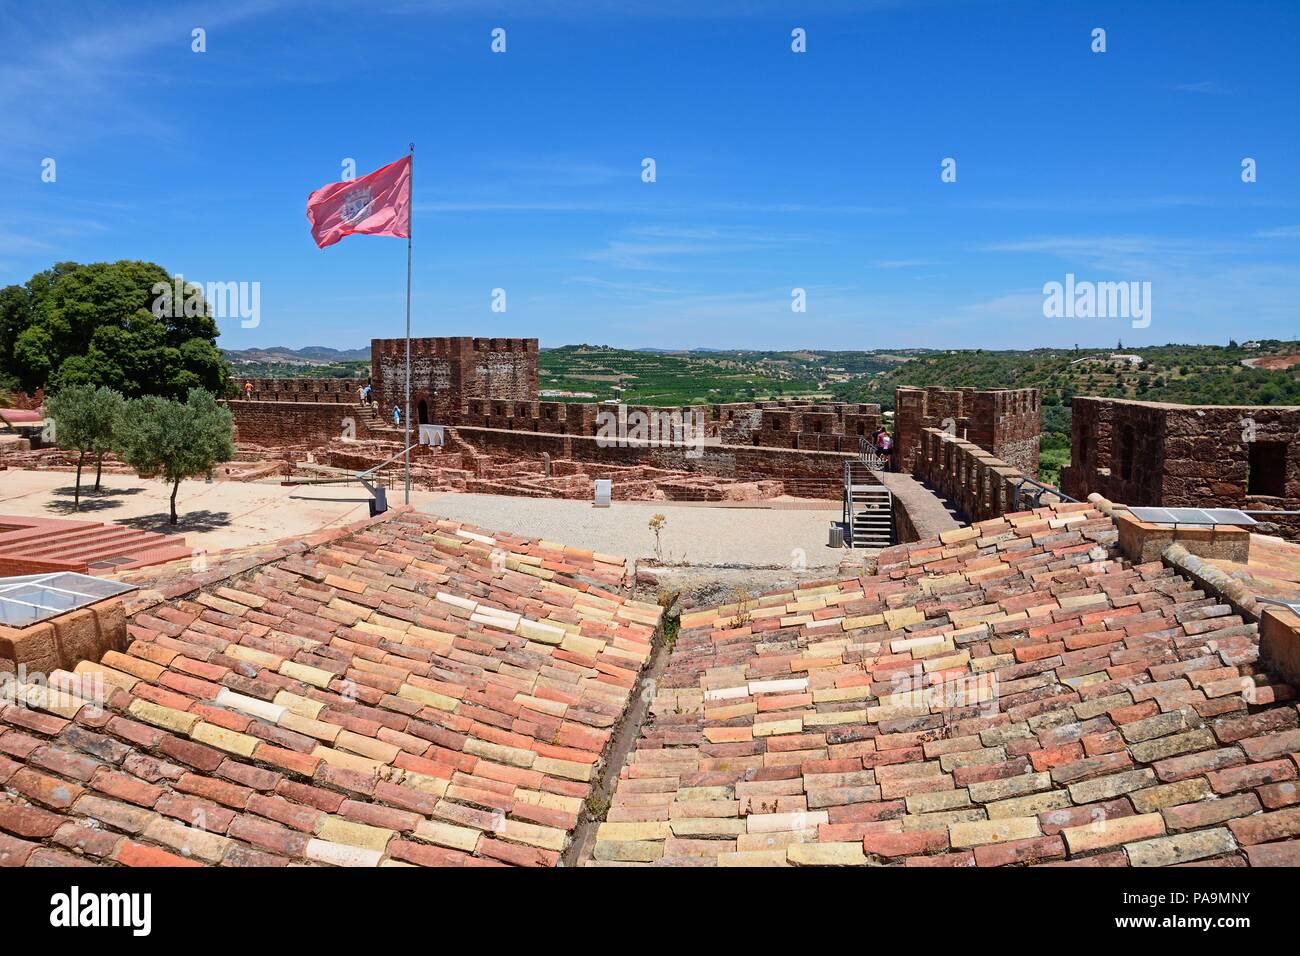 Vista le rovine e i giardini del castello medievale con merli e torri a posteriori con i turisti che si godono la impostazione, Silves, Portogallo, Foto Stock